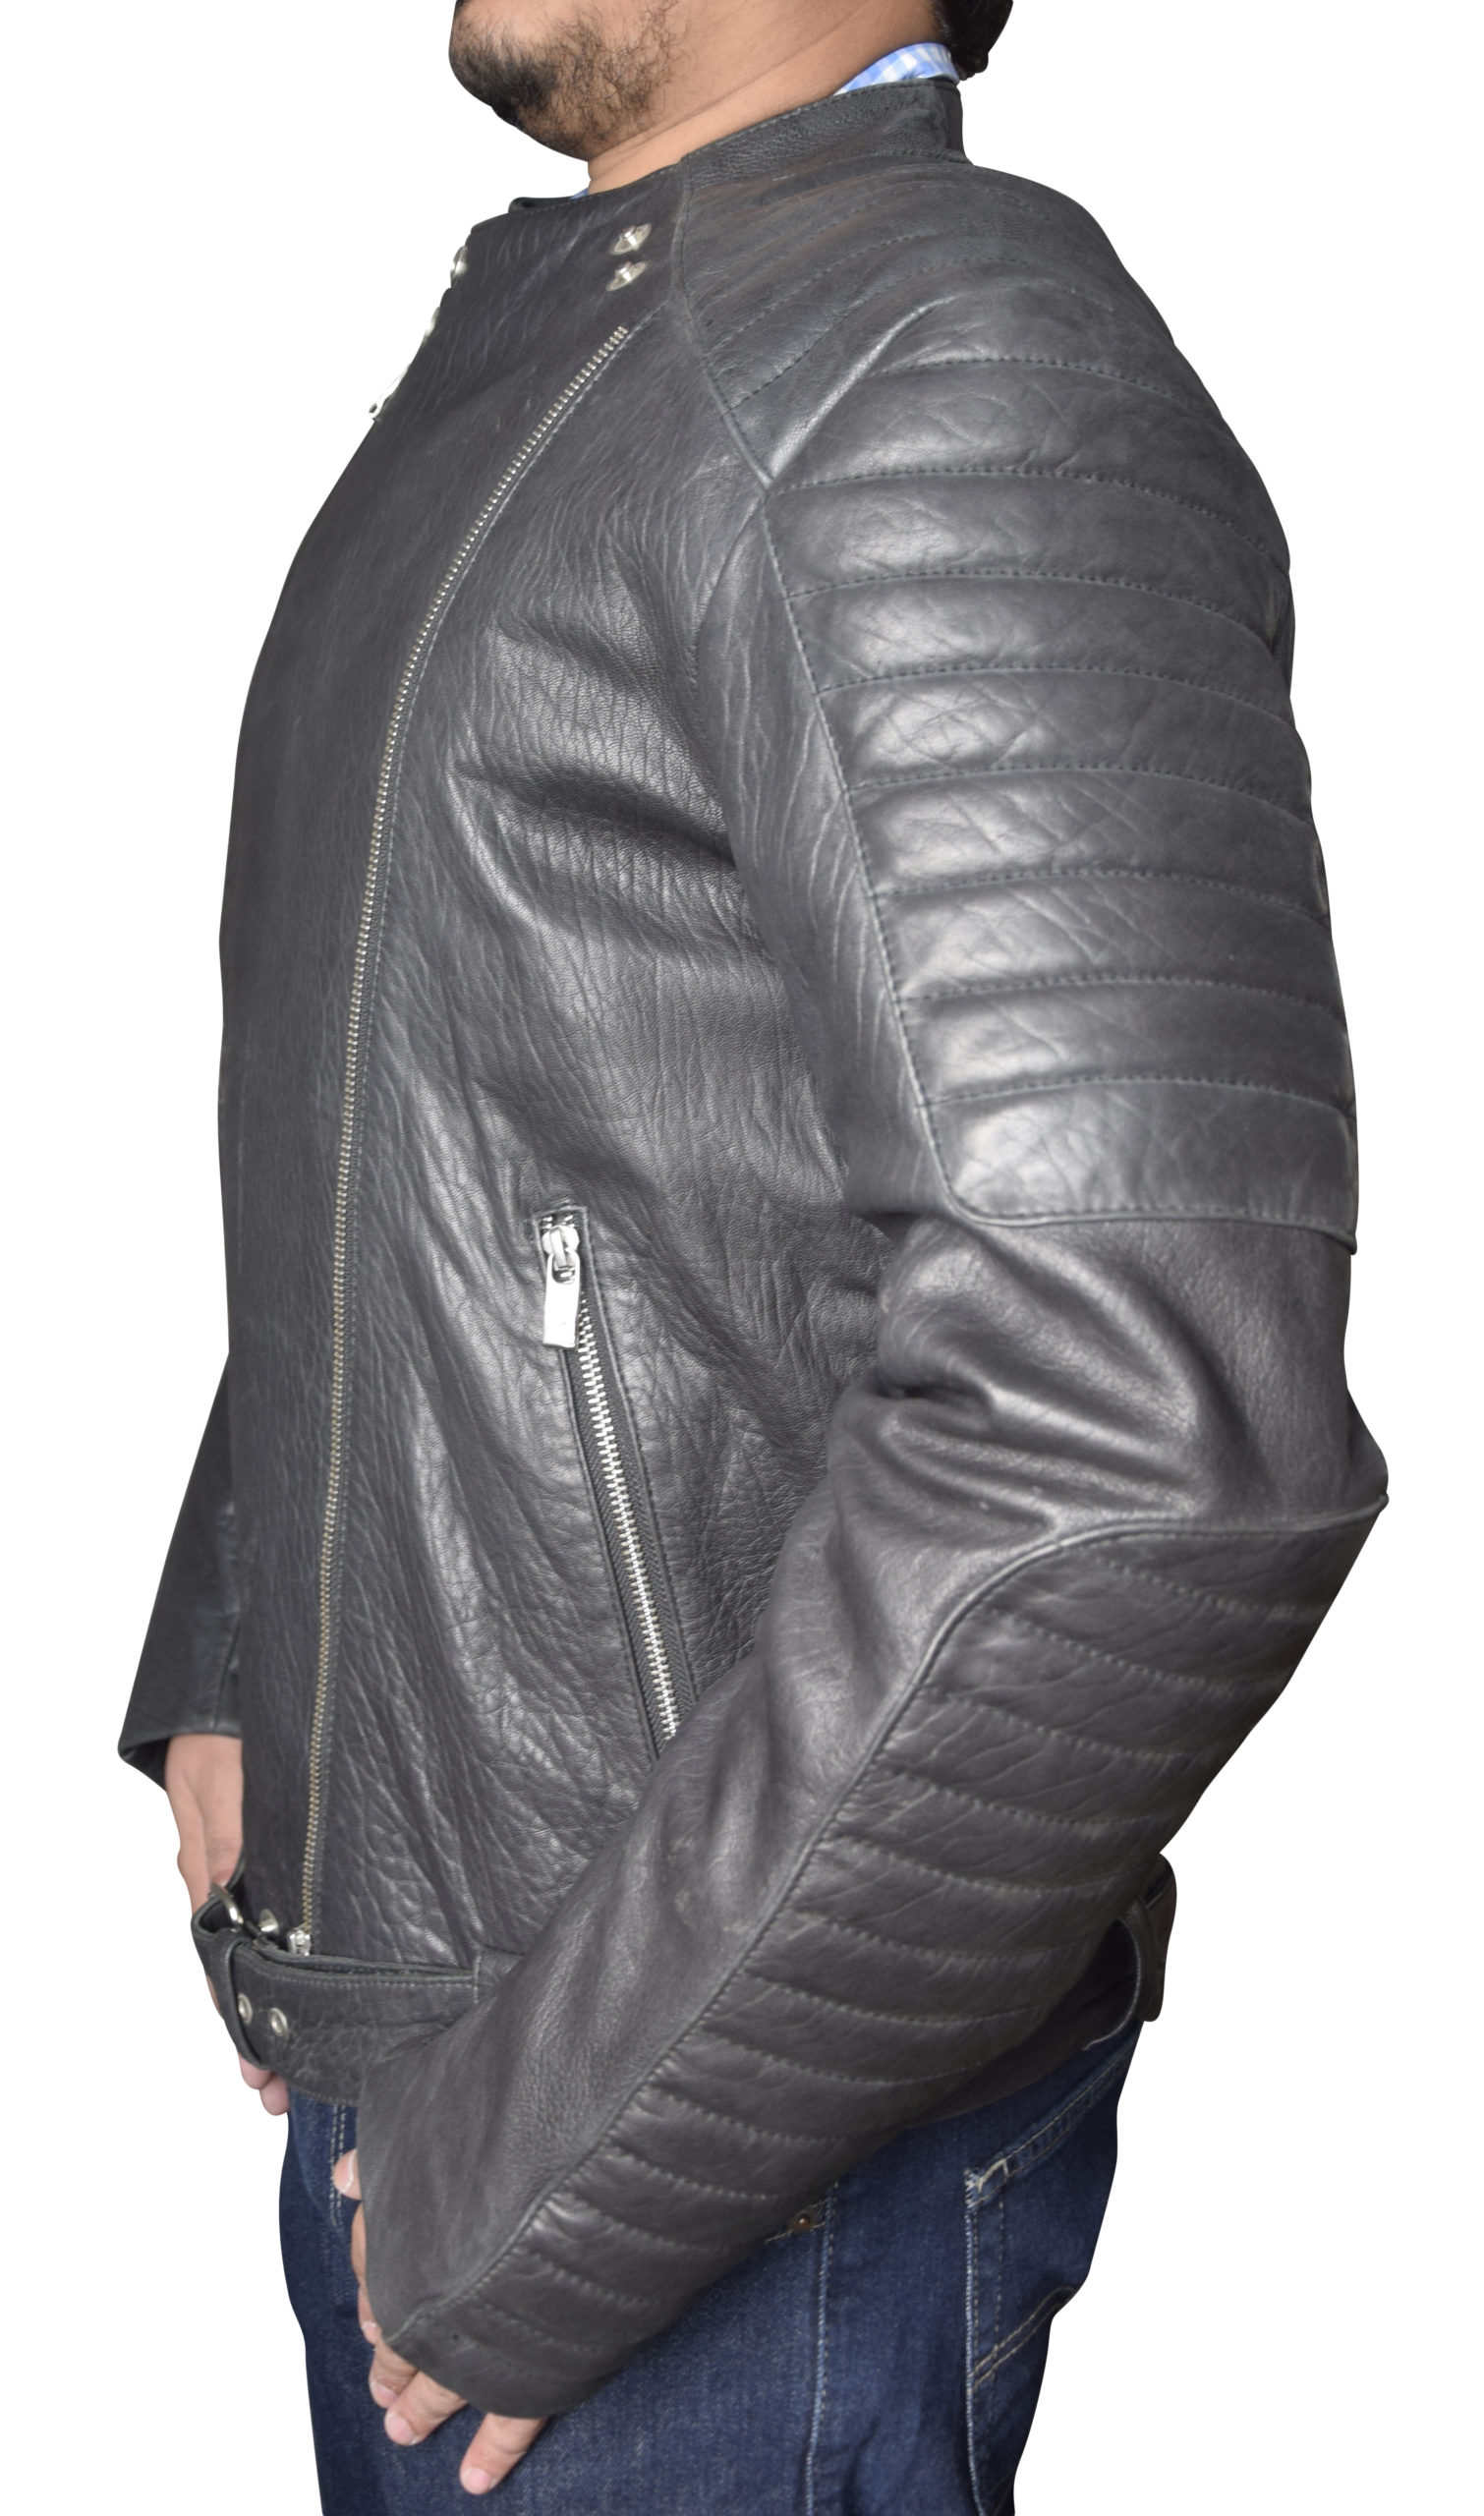 Ggator Leather Jacket